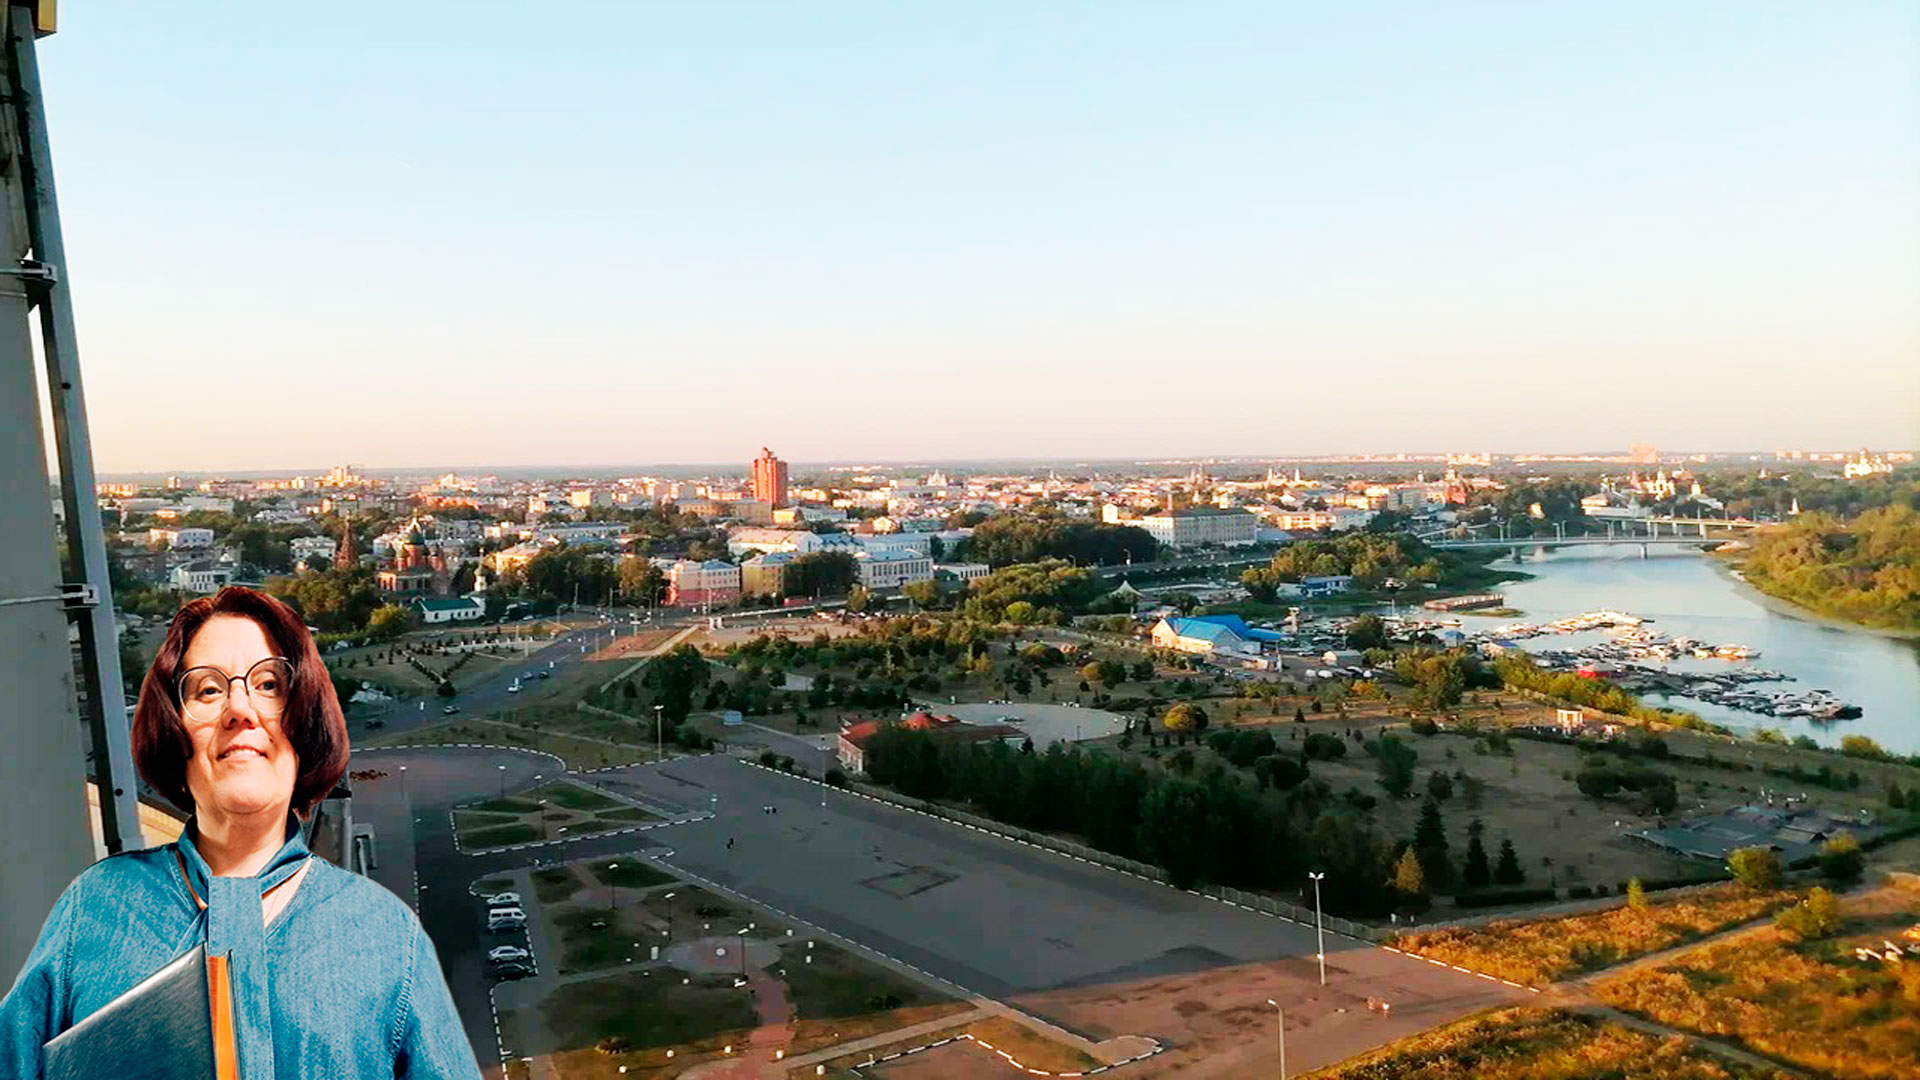 Колесо обозрения Ярославль: панорамный вид из кабинки.